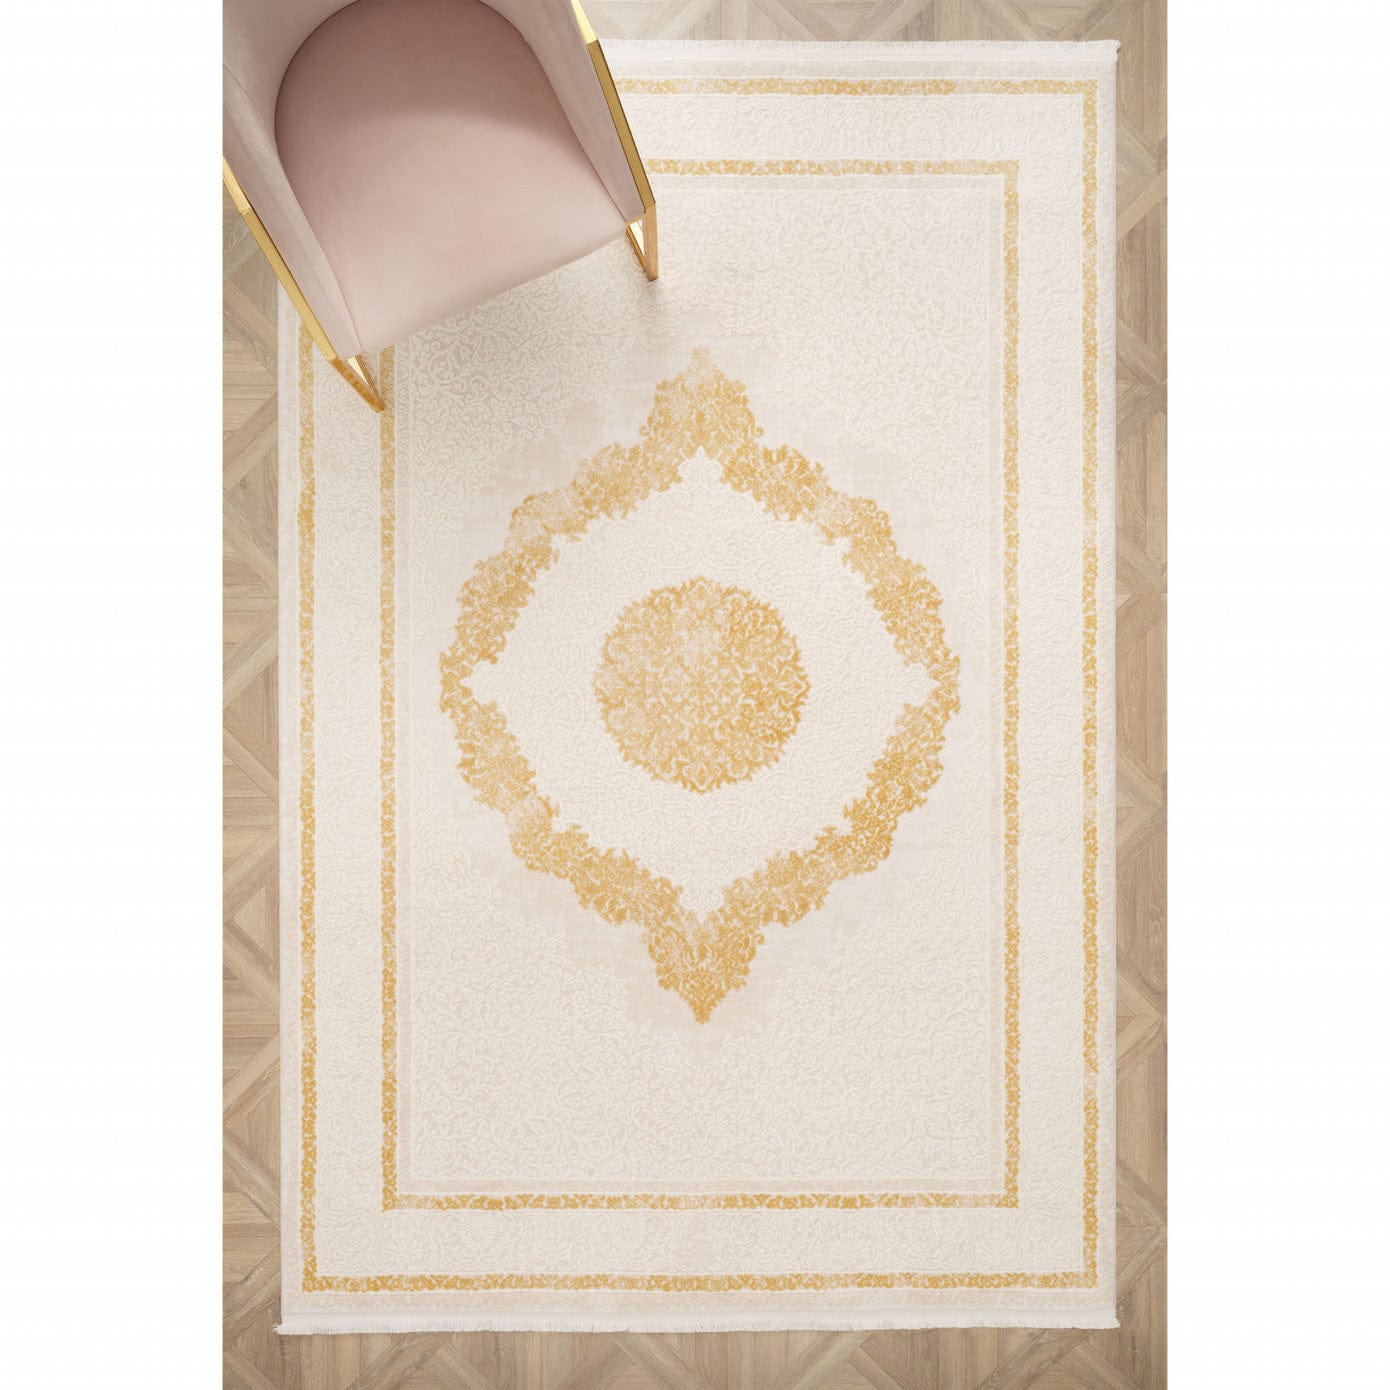 Kashmir Carpet Acrylic Bosphorus Üsküdar 200x290 cm Karaca Home